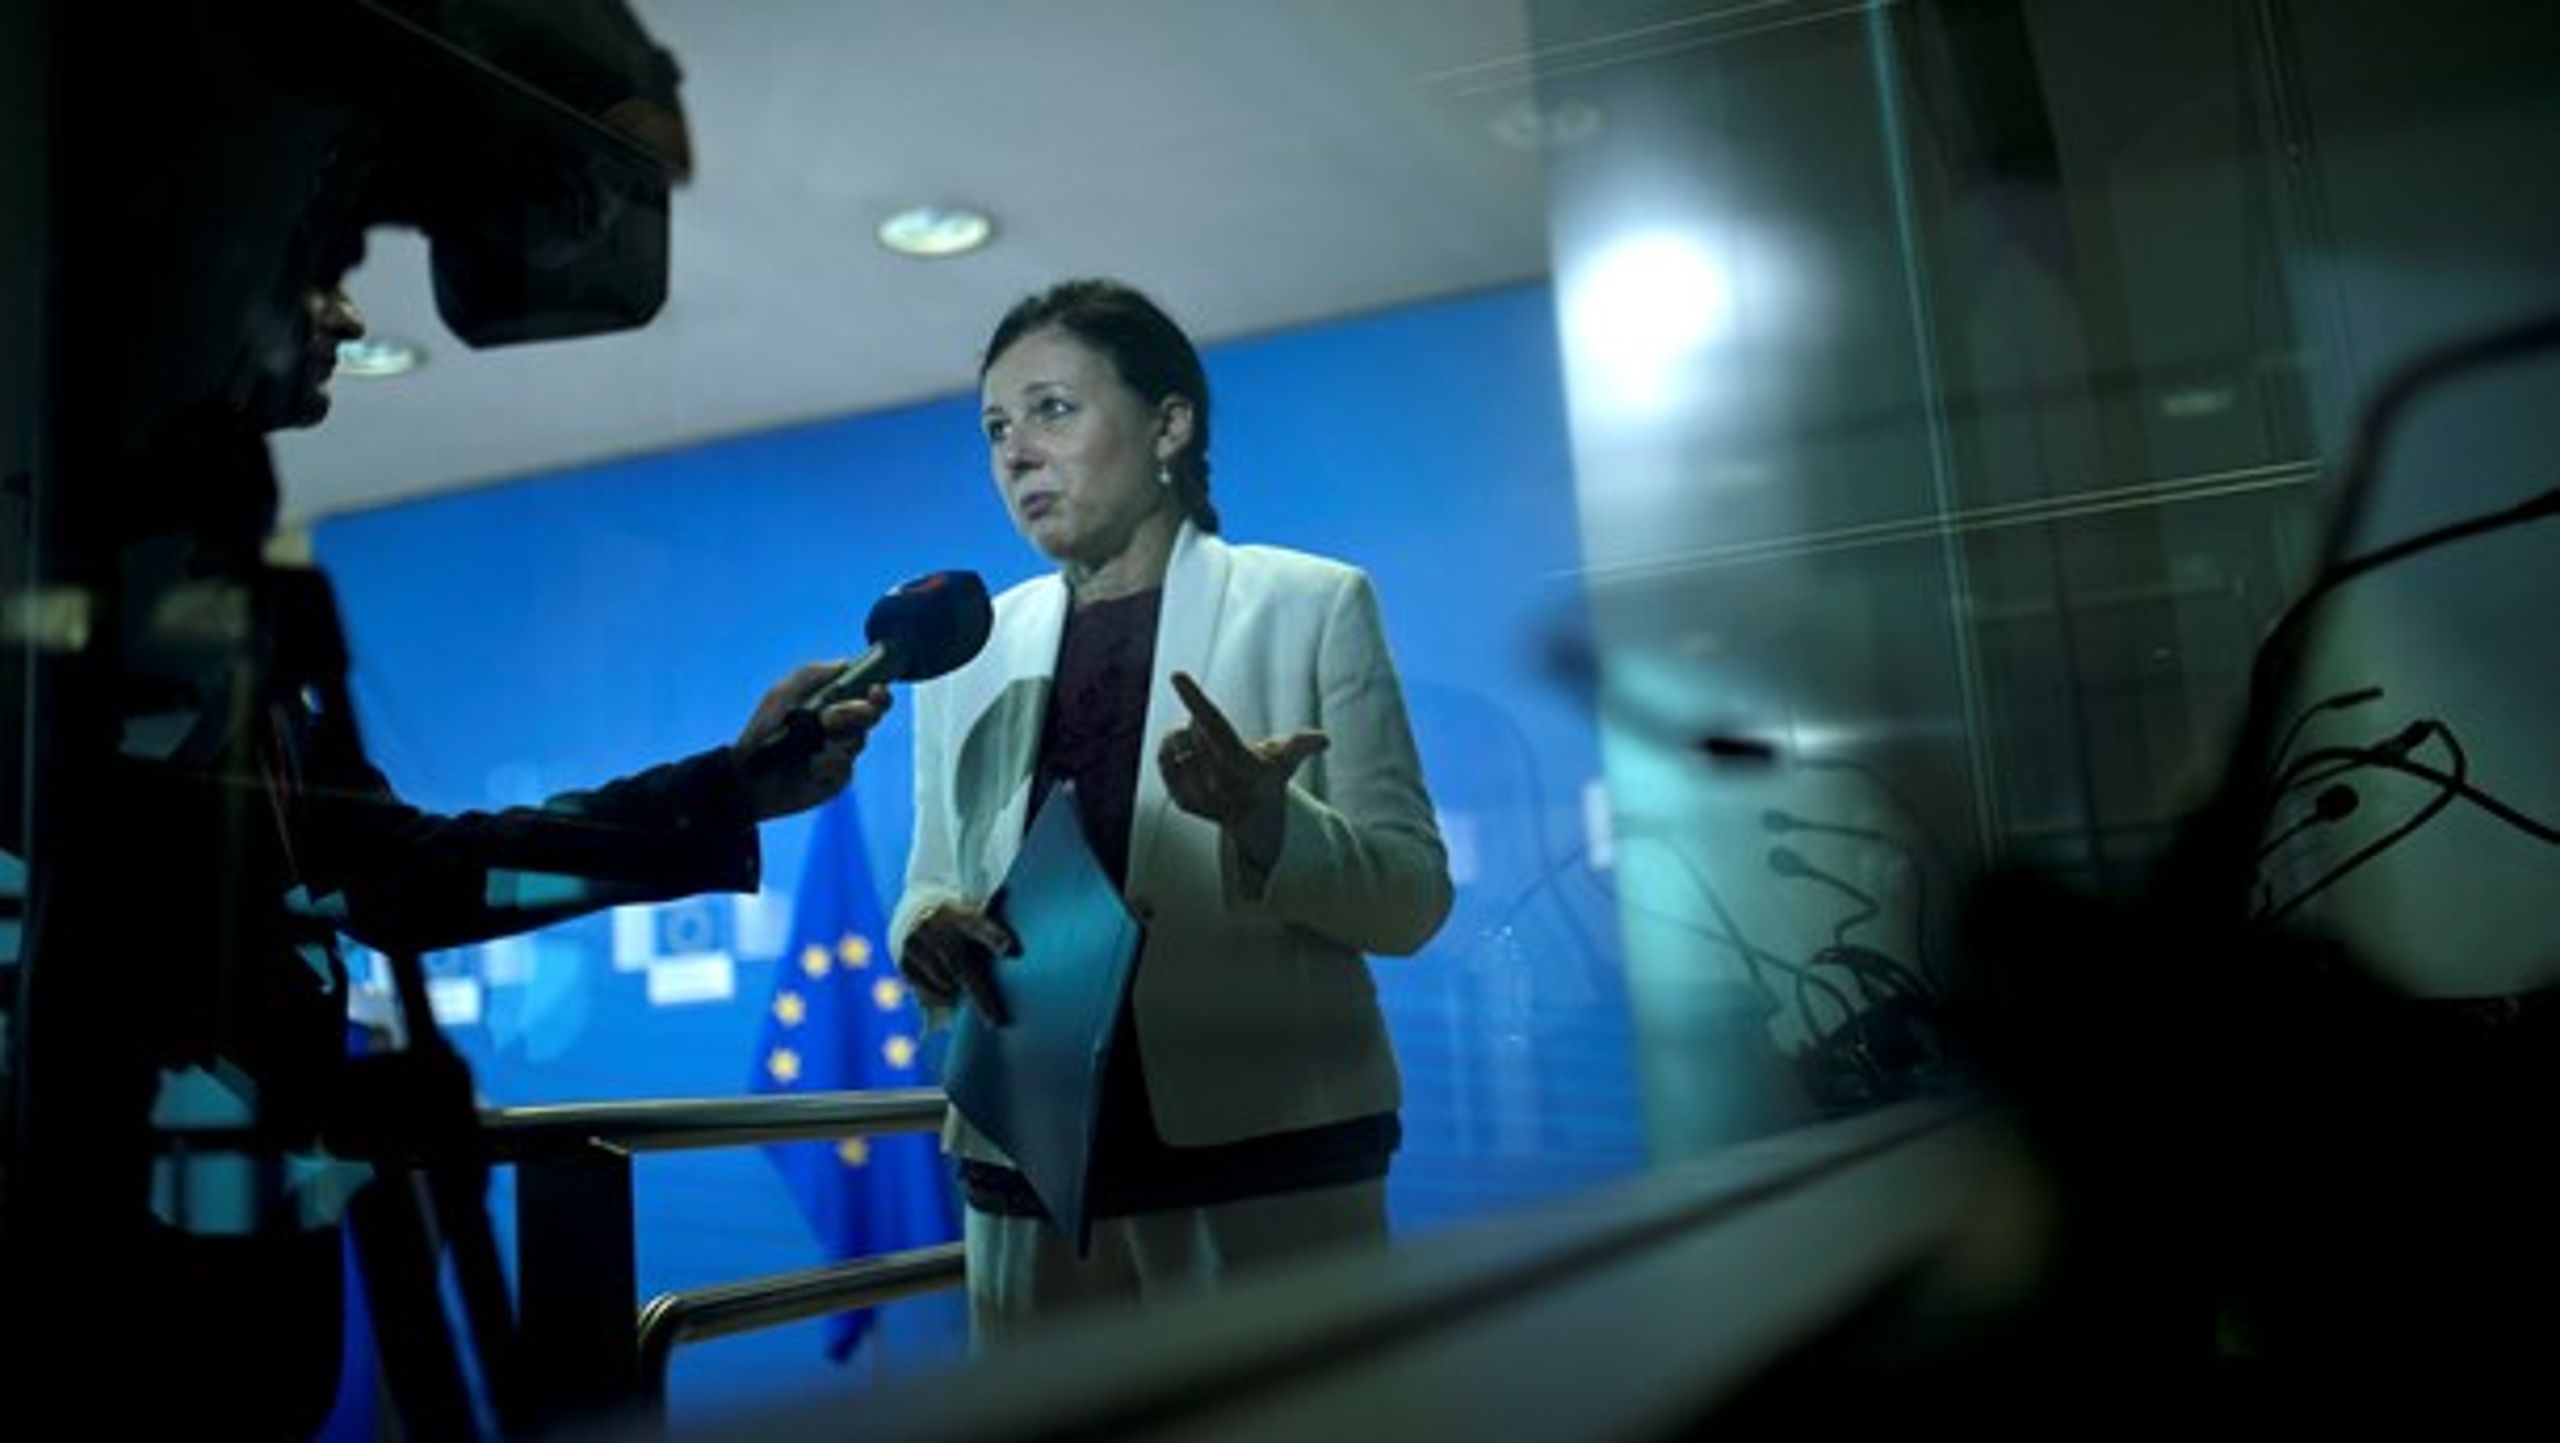 EU's retskommissær, Vera Jourová, vil have de europæiske landes myndigheder til at gribe ind mod manipulation af vælgerne på internettet.